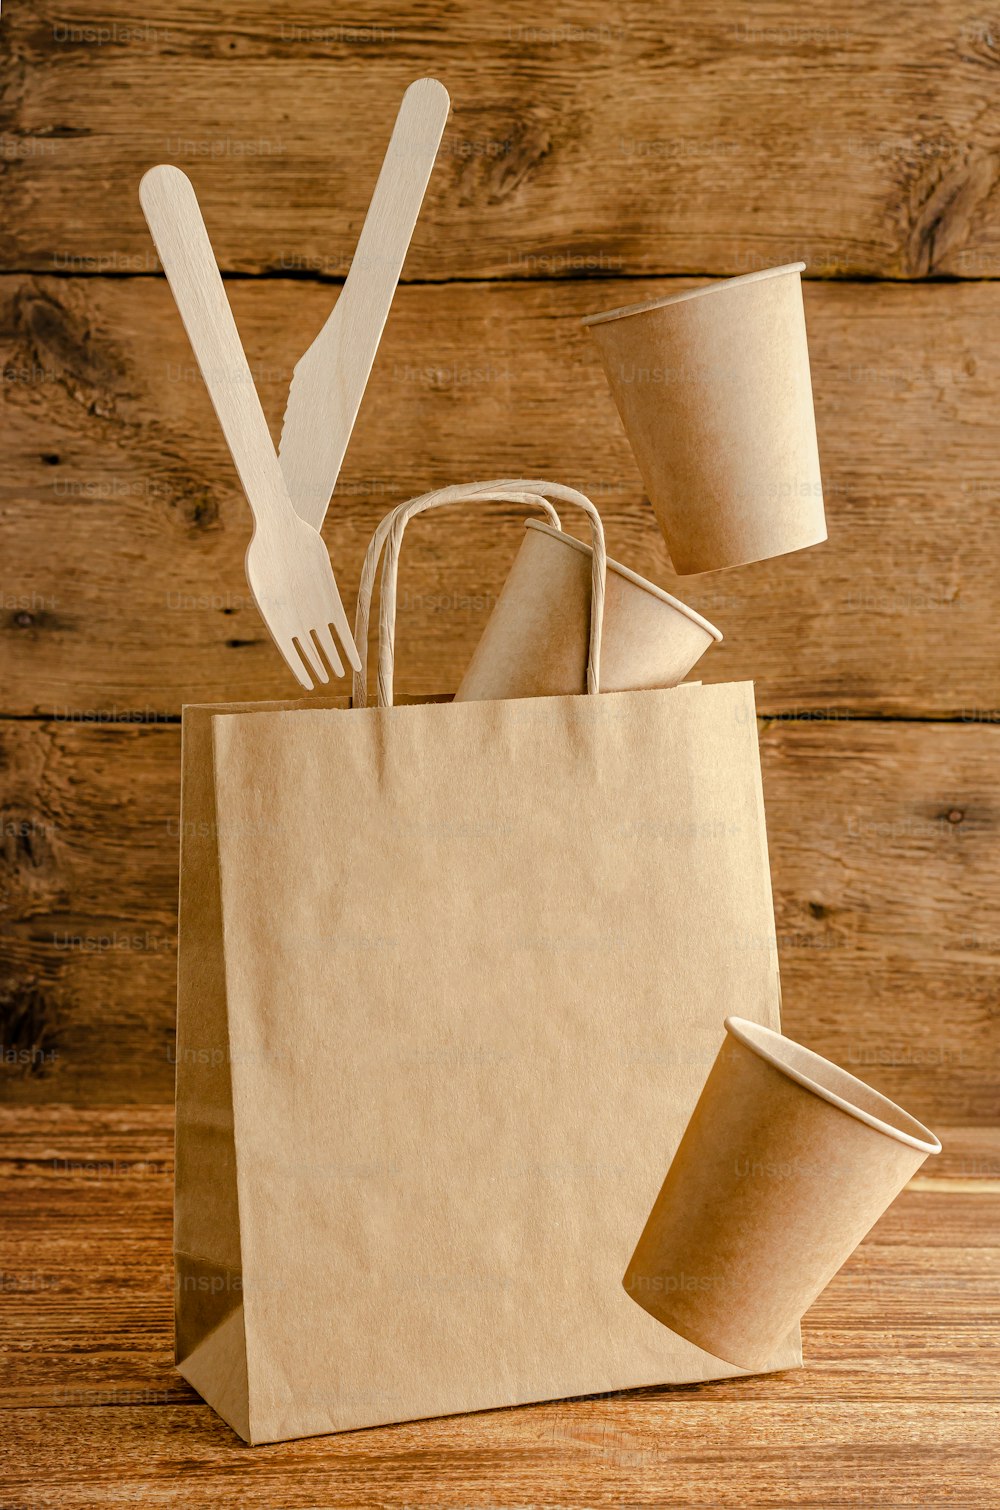 Stoviglie di carta usa e getta volanti sopra la borsa con mock up su sfondo di legno. Concetto di cura dell'ambiente.